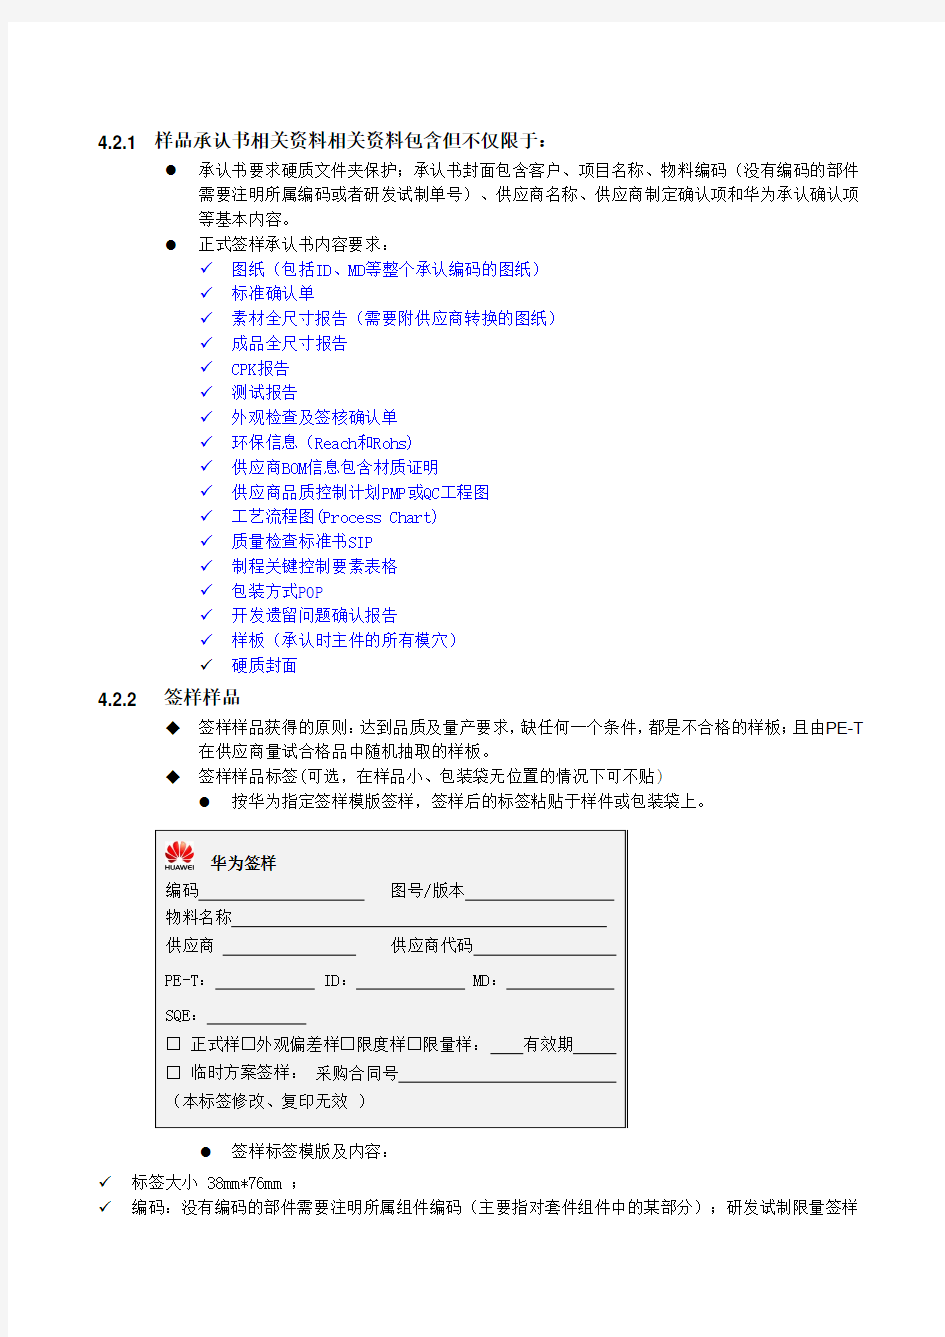 华为终端结构件承认书制作规范V1.0